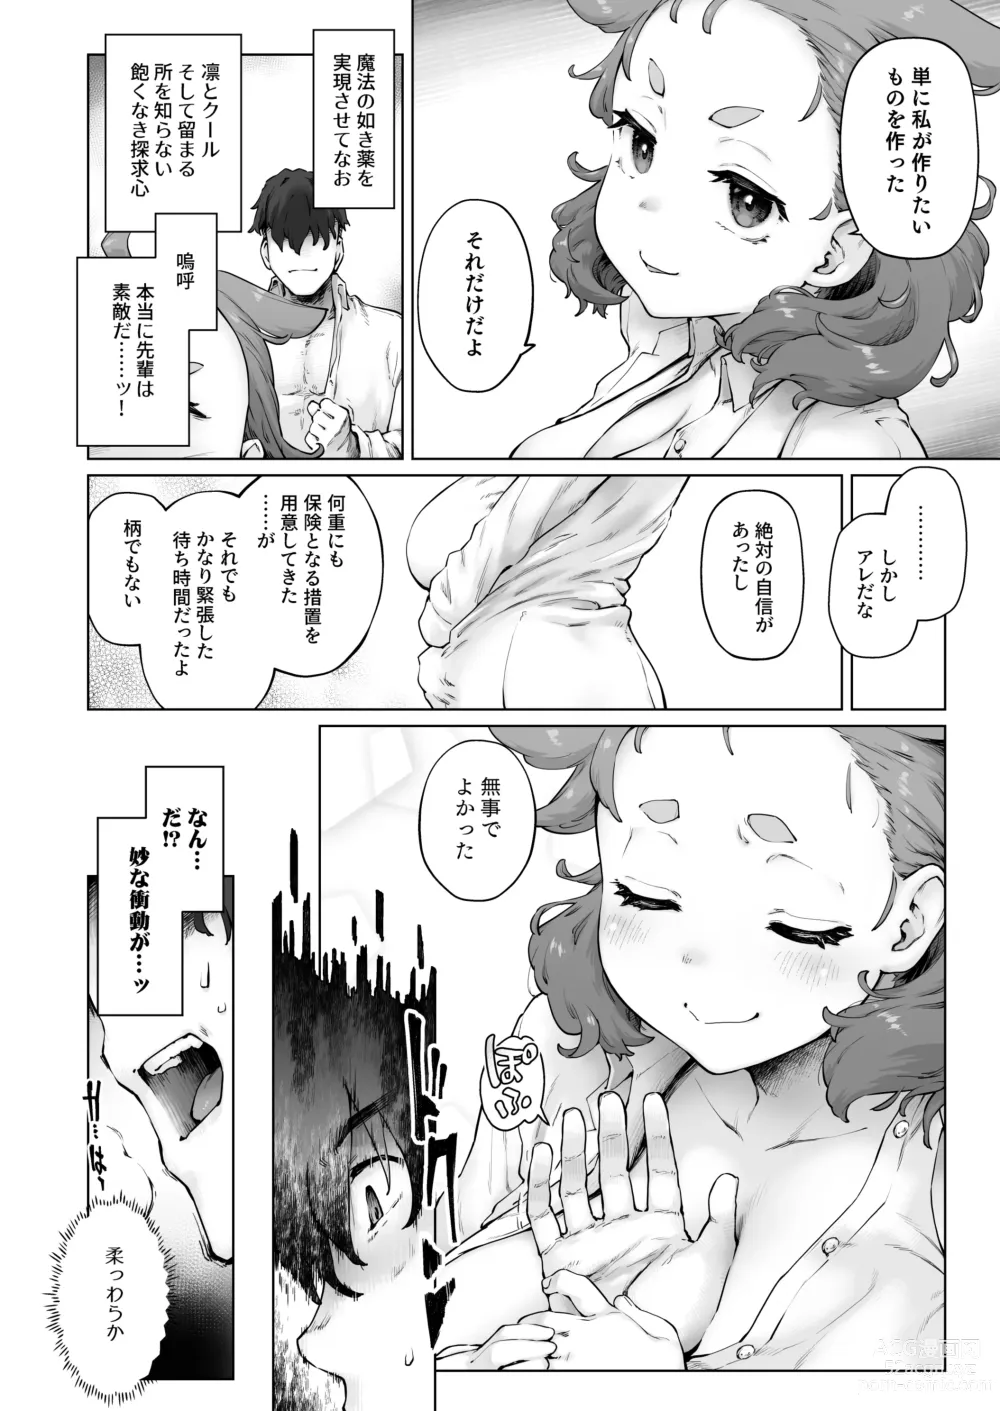 Page 6 of doujinshi Chimikko Bakunyuu Hakase no Seiheki